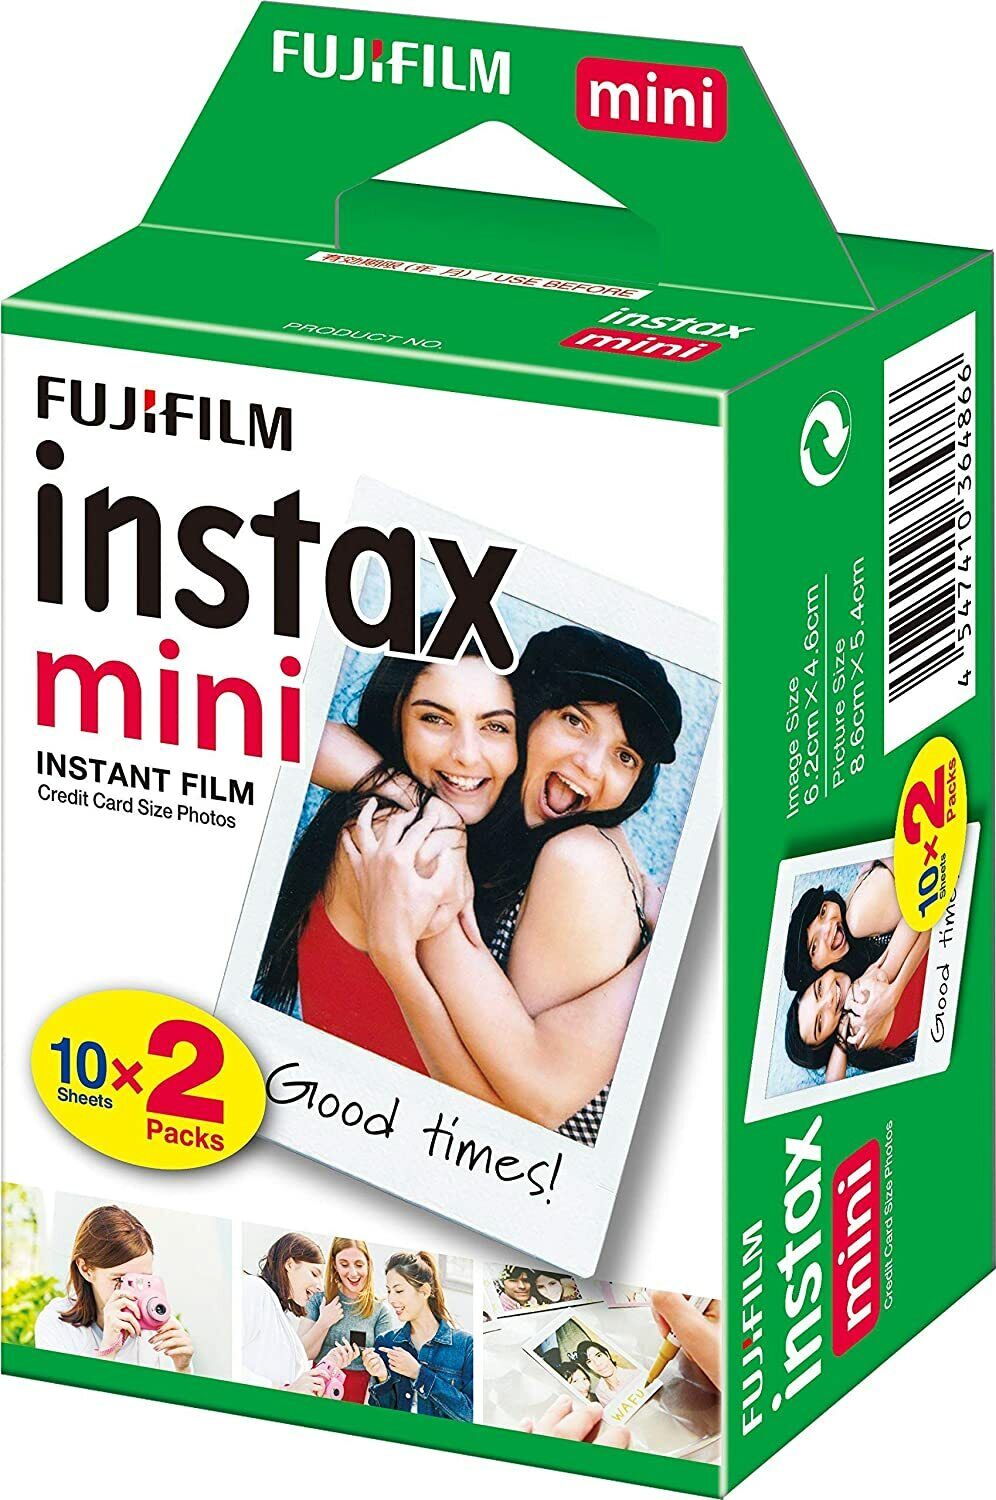 20-40-50-60 & 100 Prints Fujifilm instax instant film For Fuji mini 8 & 9 Camera Fujifilm Instax Mini - фотография #2